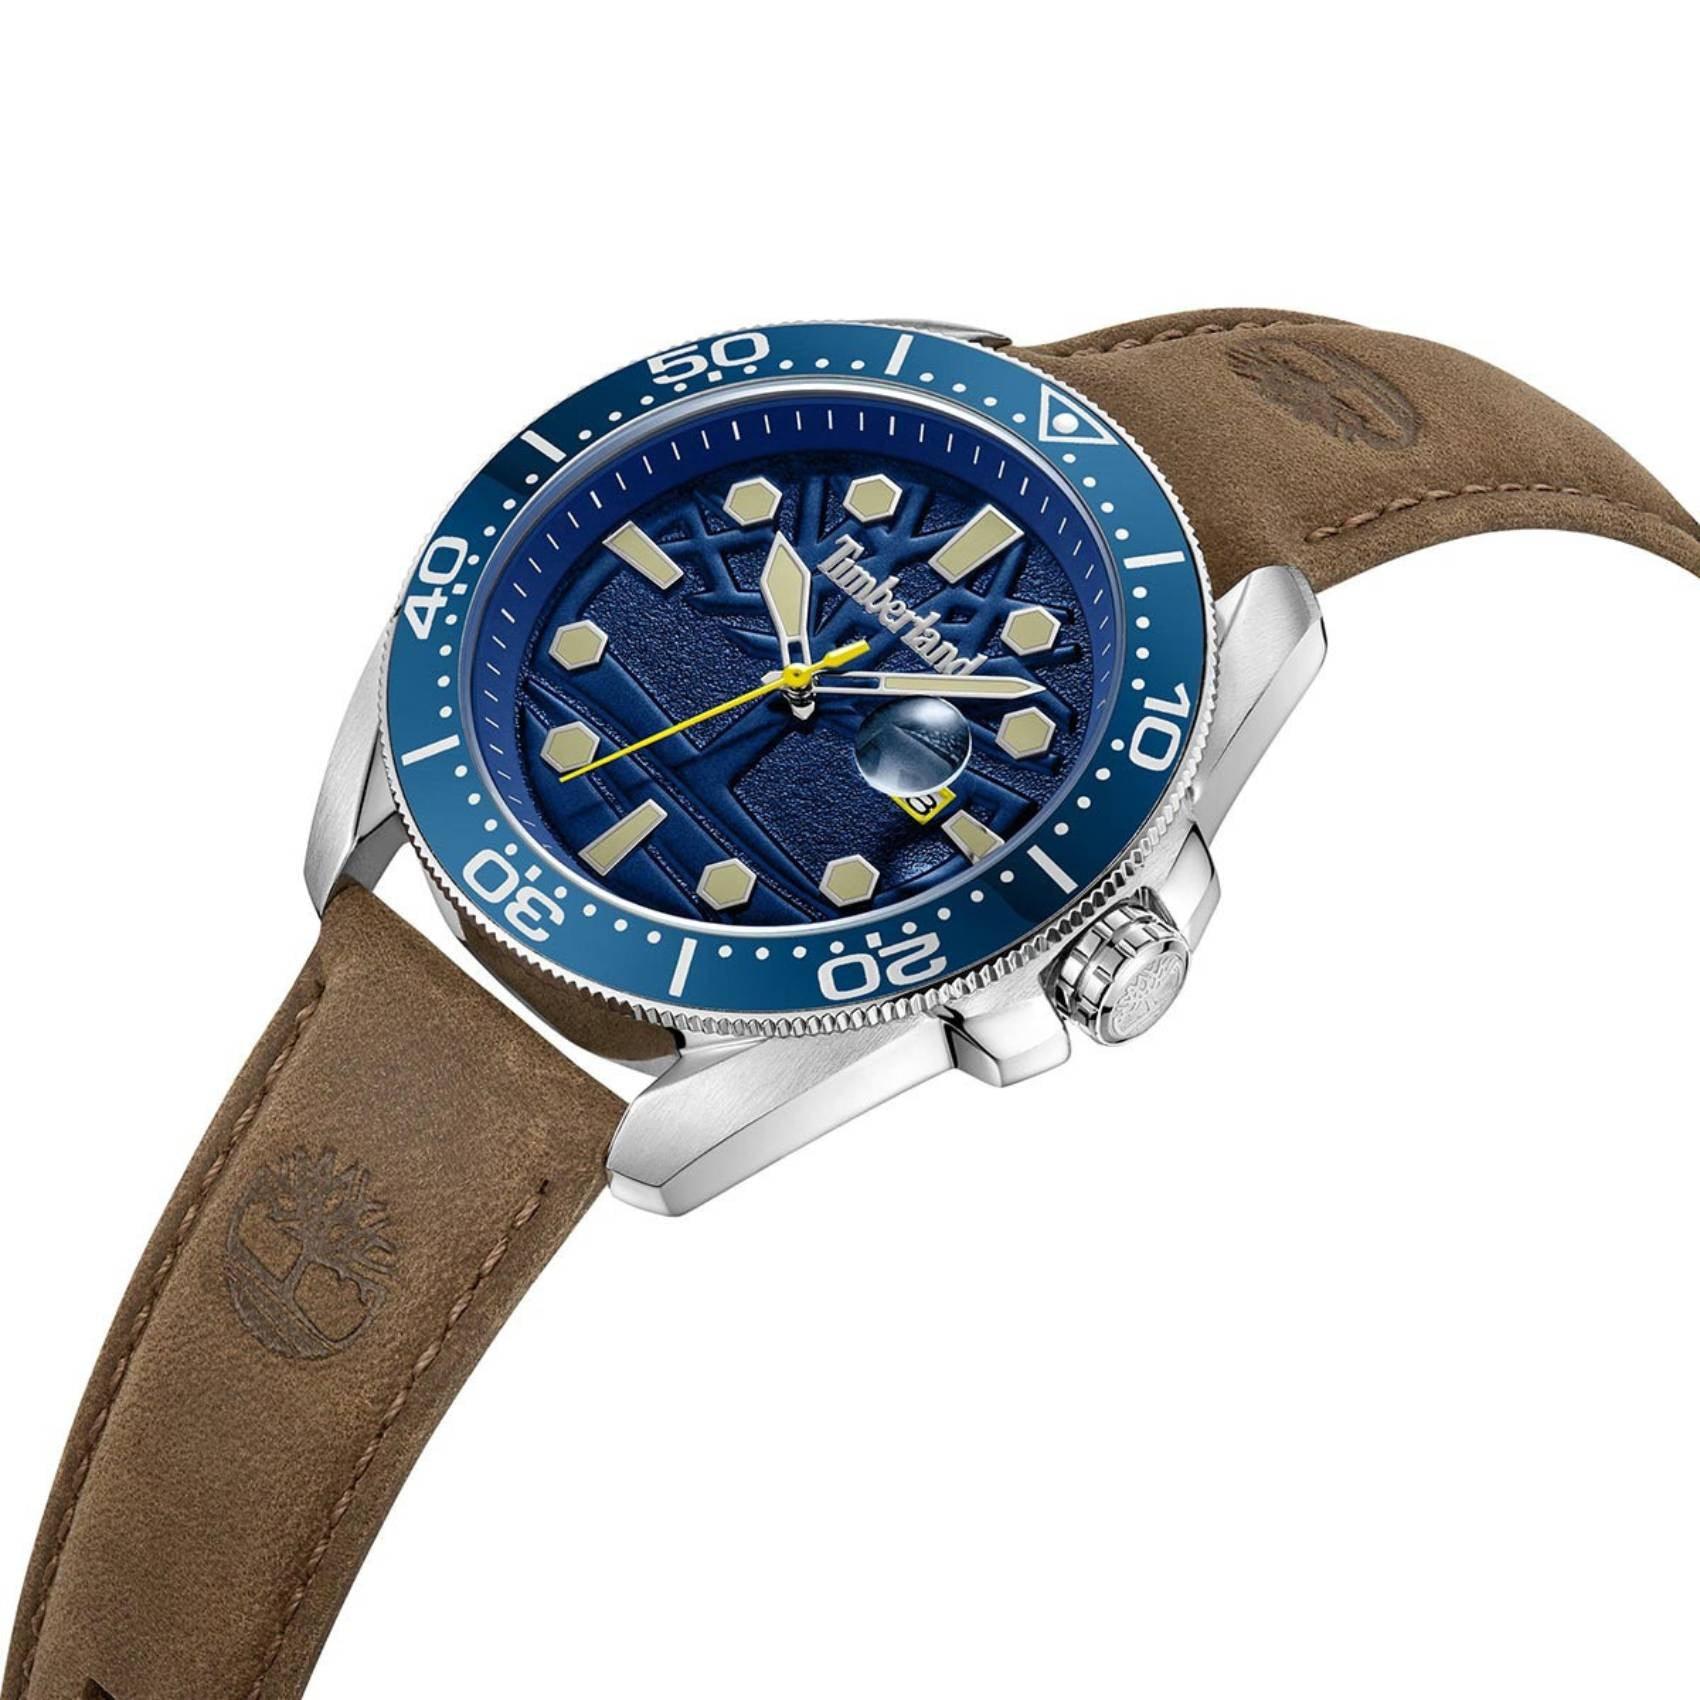 Ρολόι Timberland Carrigan TDWGB2230604 με καφέ δερμάτινο λουρί, μπλε καντράν και κάσα διαμέτρου 44mm με ένδειξη ημερομηνίας.